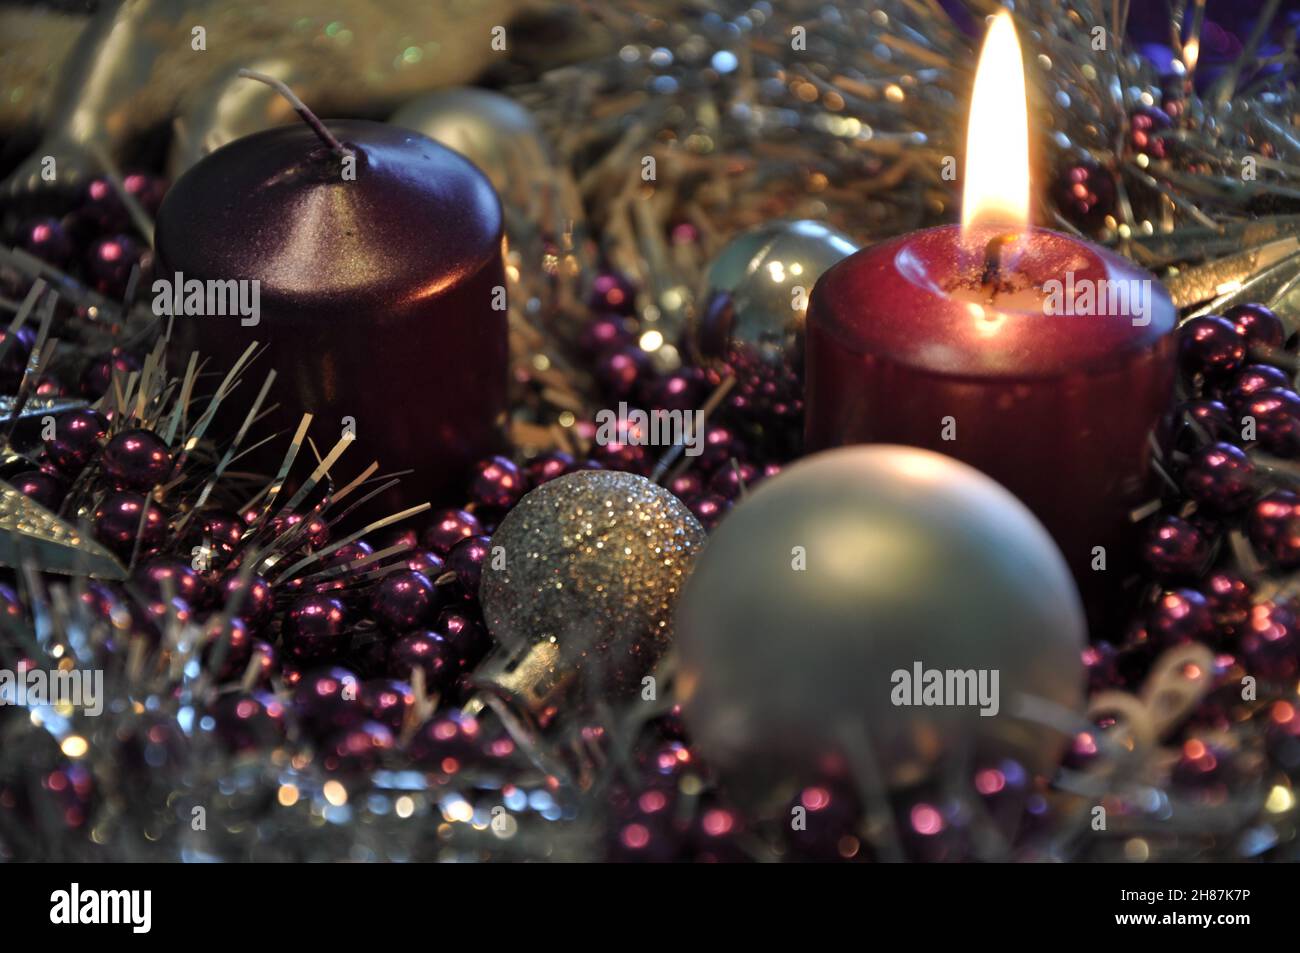 Concept de l'Avent lumière de Noël avec des bougies boule étoiles.Studio photo d'une belle couronne de l'Avent avec des boules et une bougie violette brûlante Banque D'Images